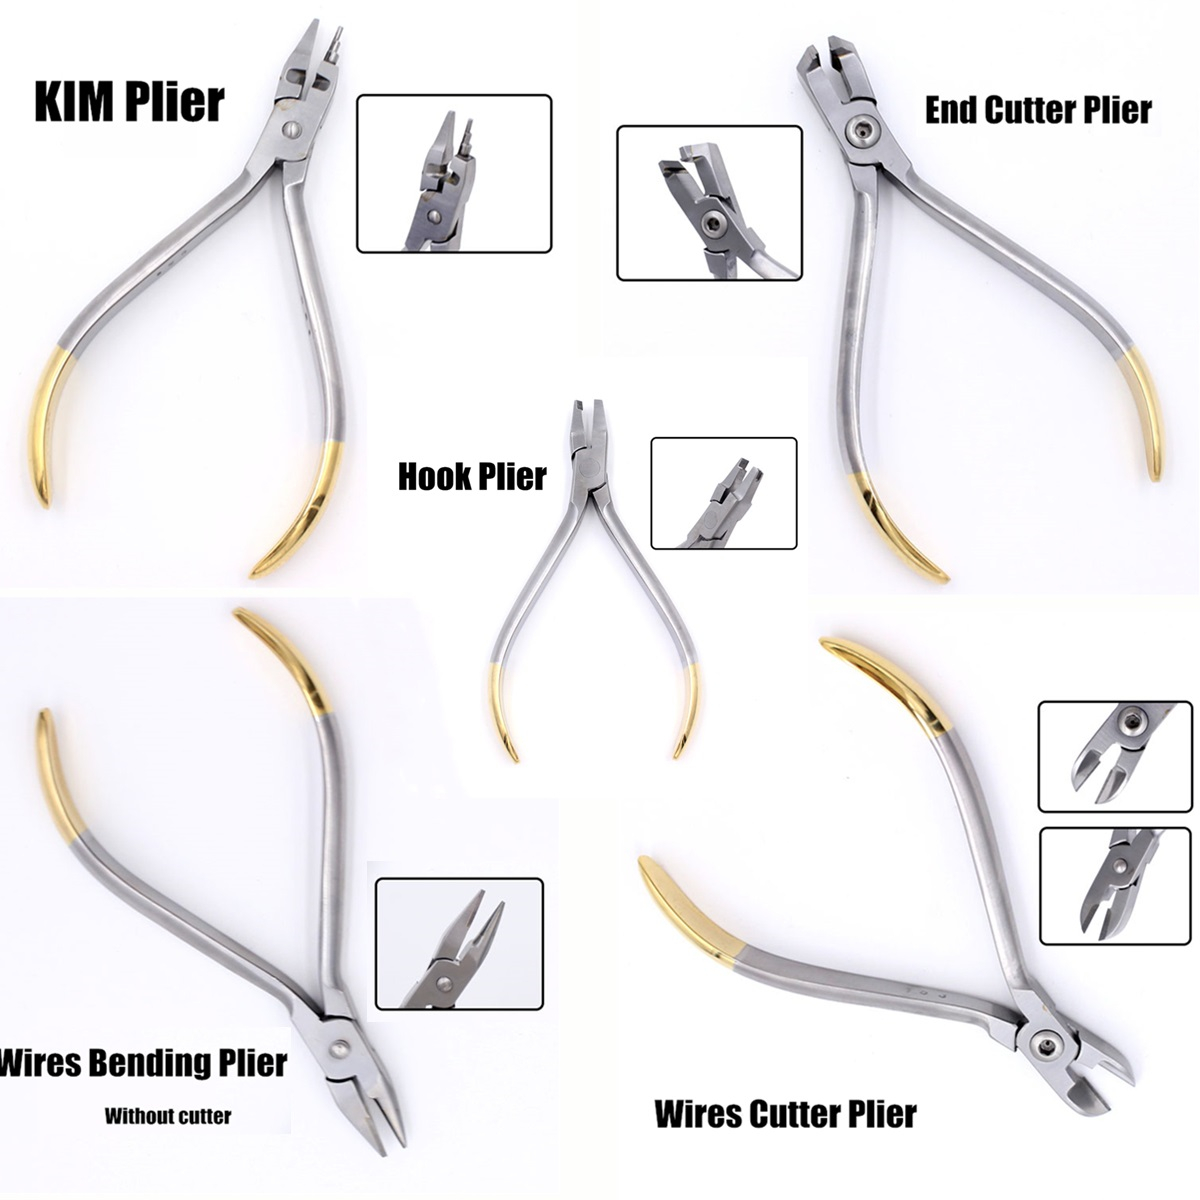 Dental-Orthodontic-Forceps-Pliers-Tool-Cutter-End-Distal-Wires-Bending-Plier-KIM-Teeth-1439156-2